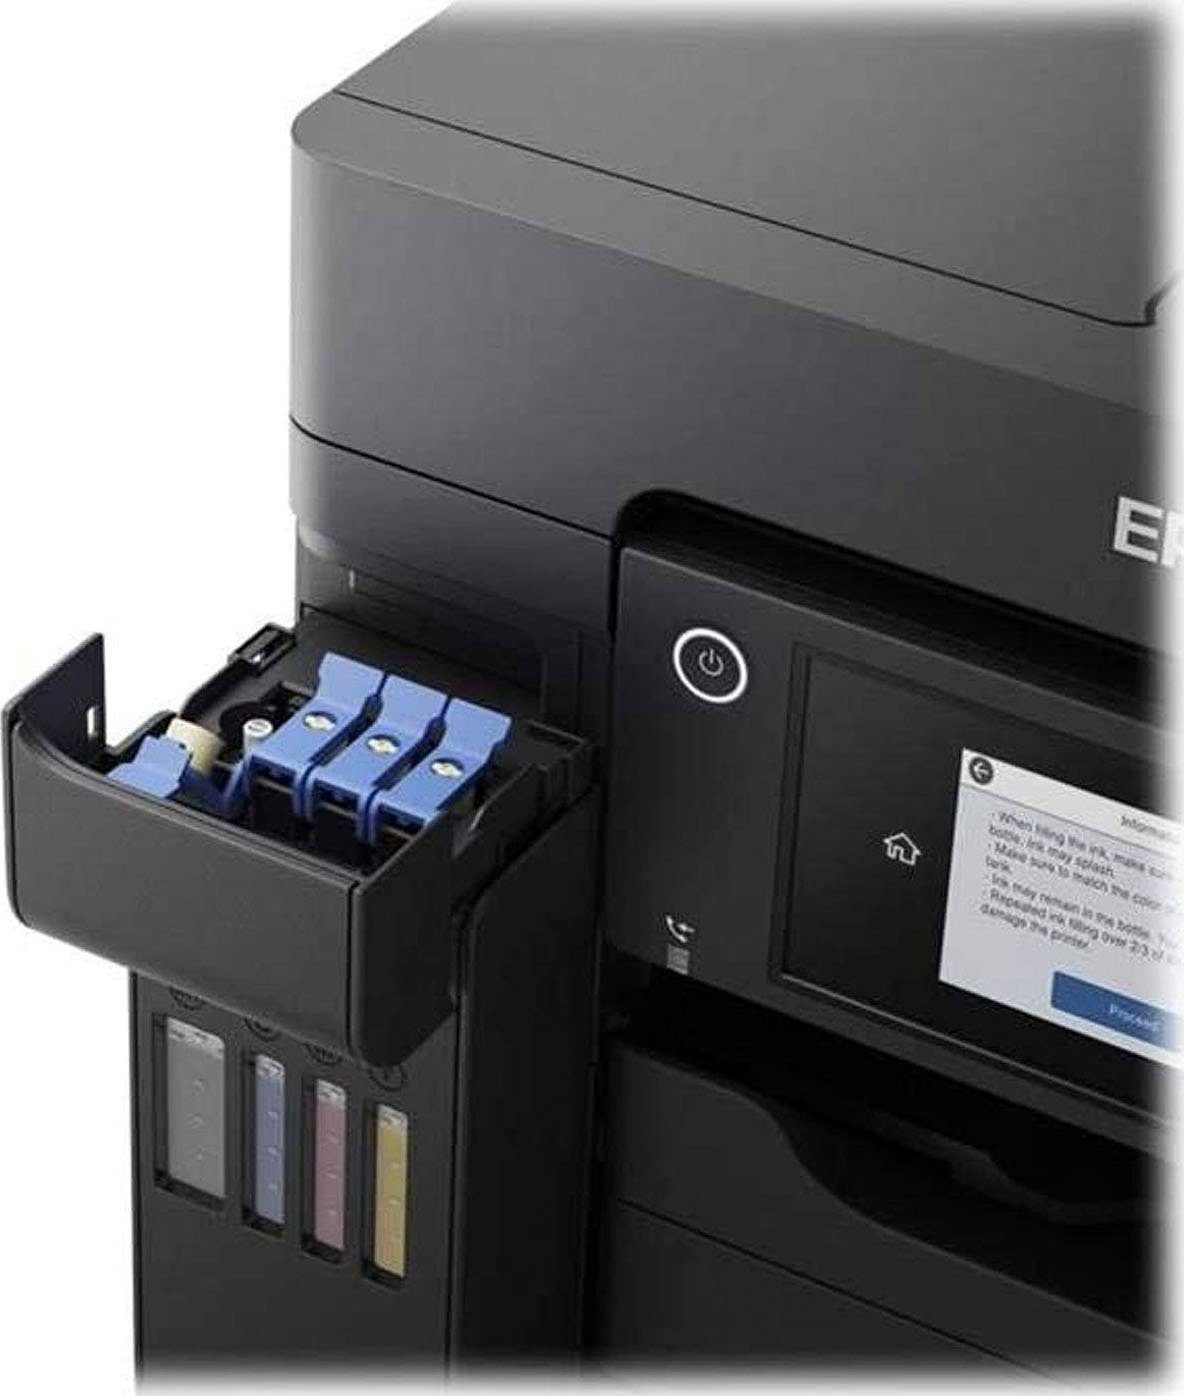 Epson Inkjetprinter Ecotank Et 5850 In De Online Shop Otto 8214